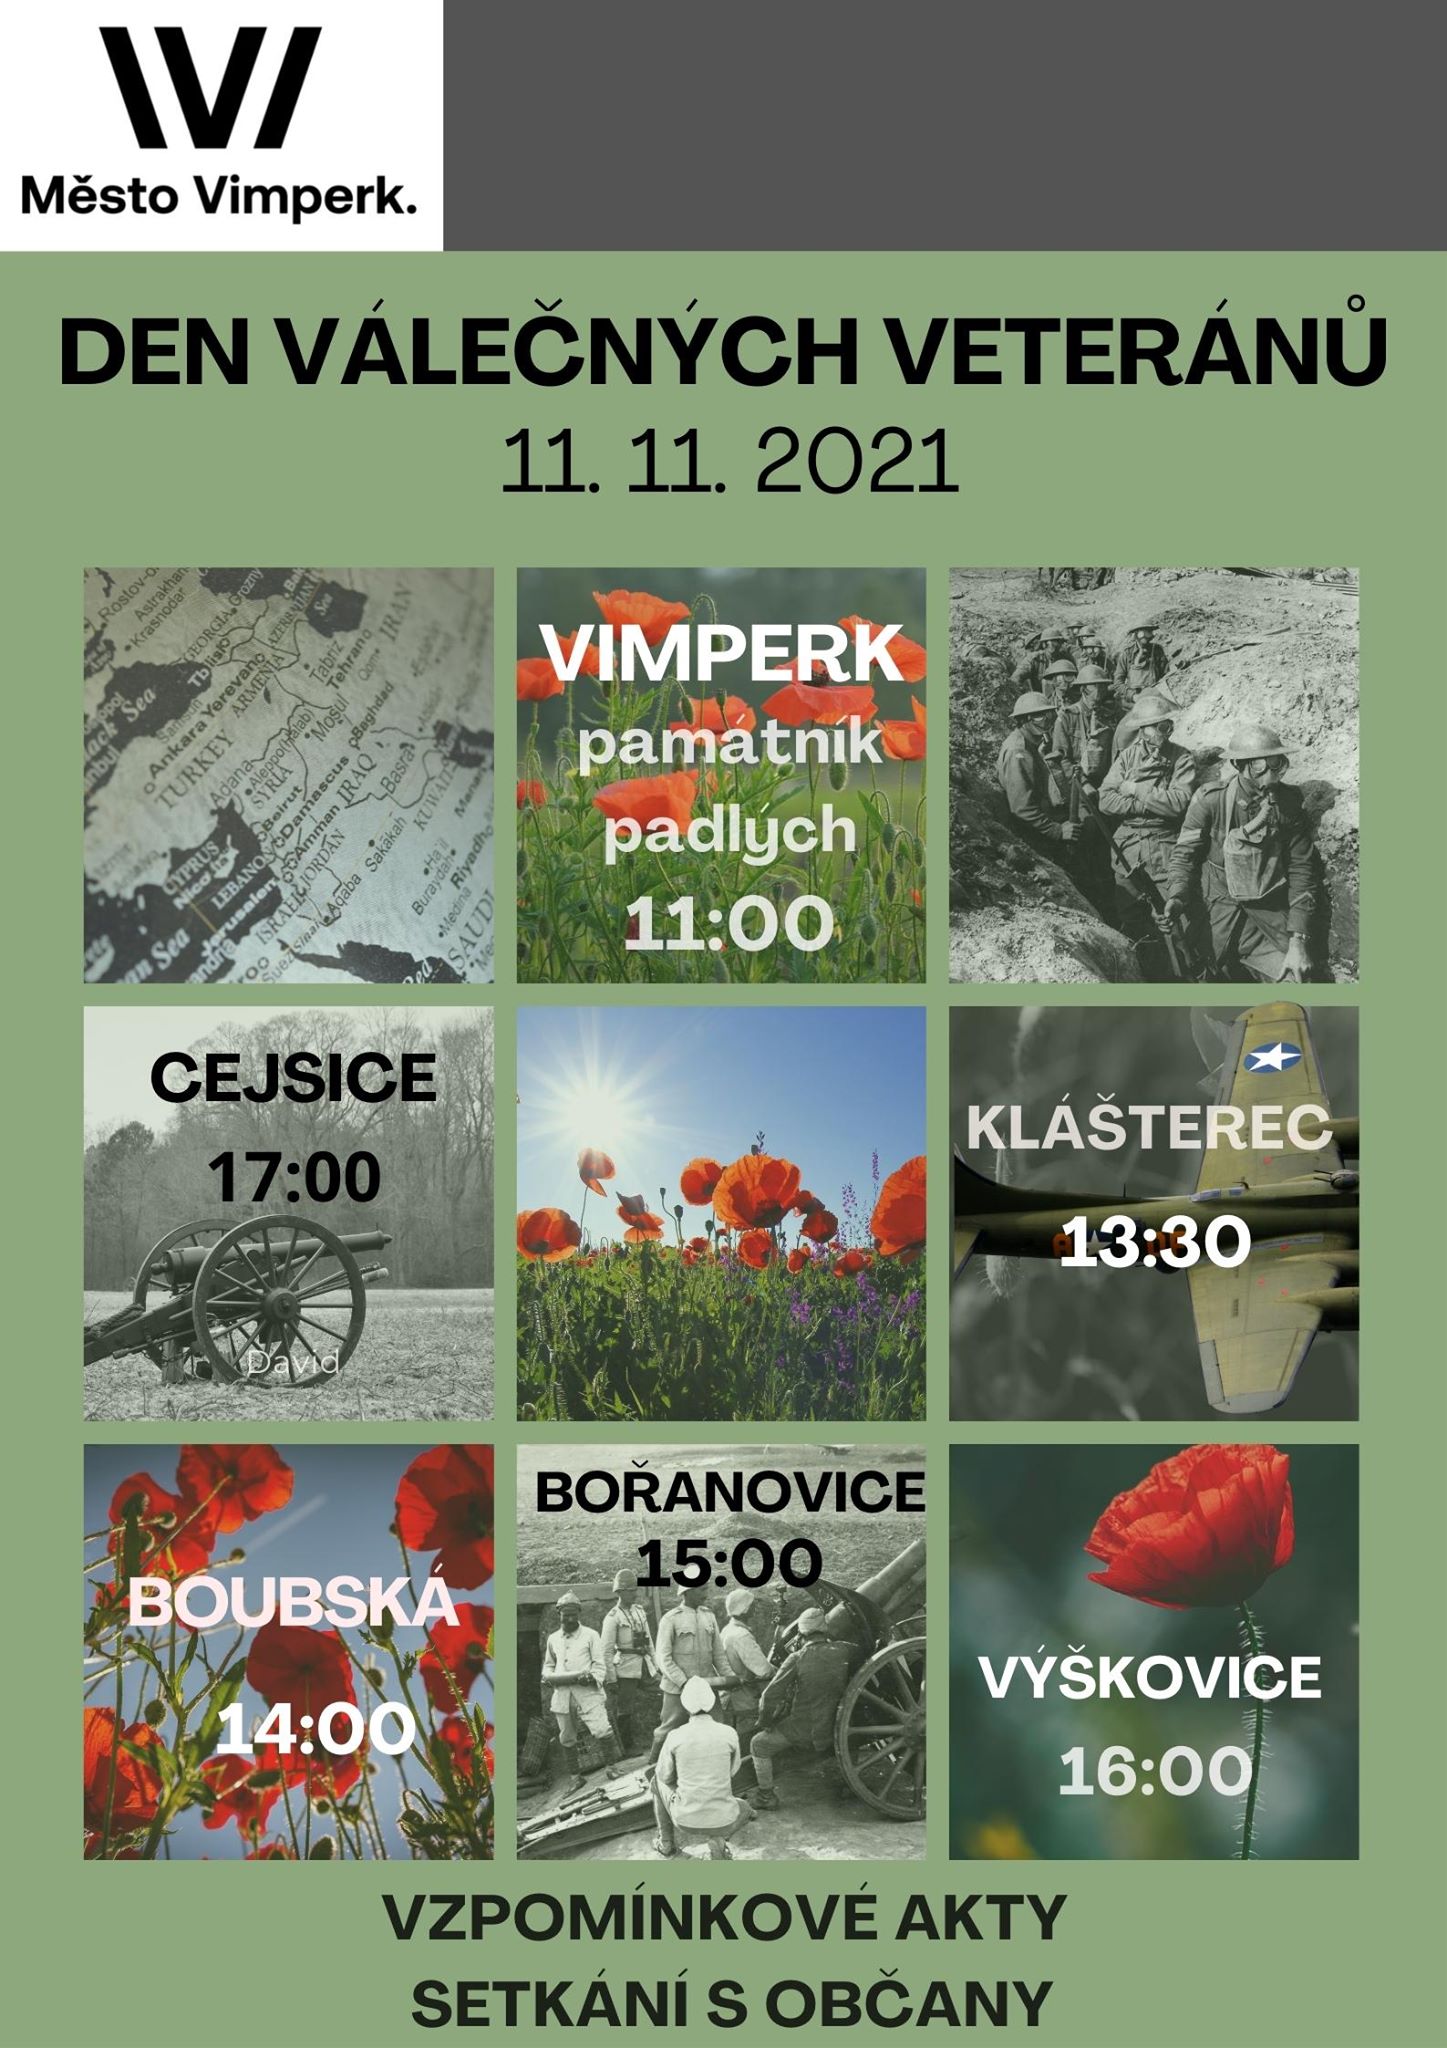 2021 11 11 Den válečných veteránů ve Vimperku